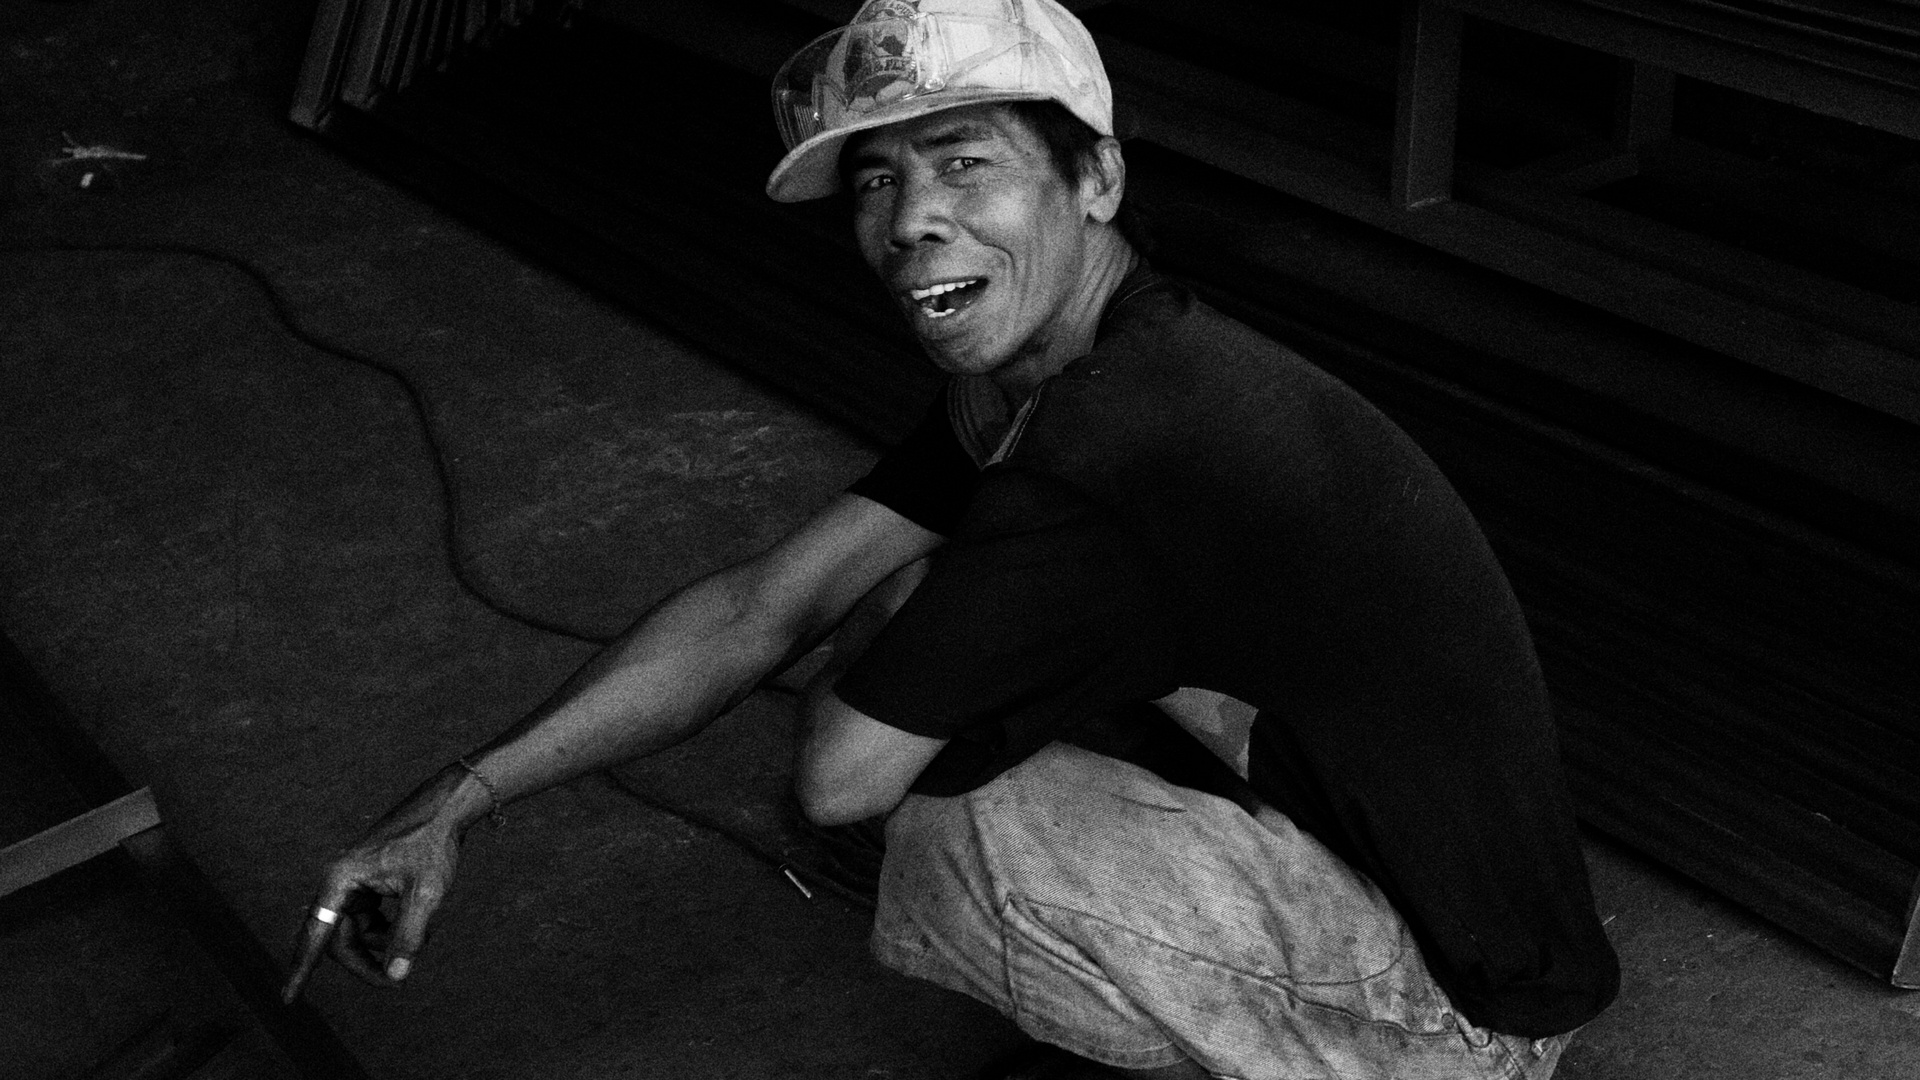 Bali-Street worker